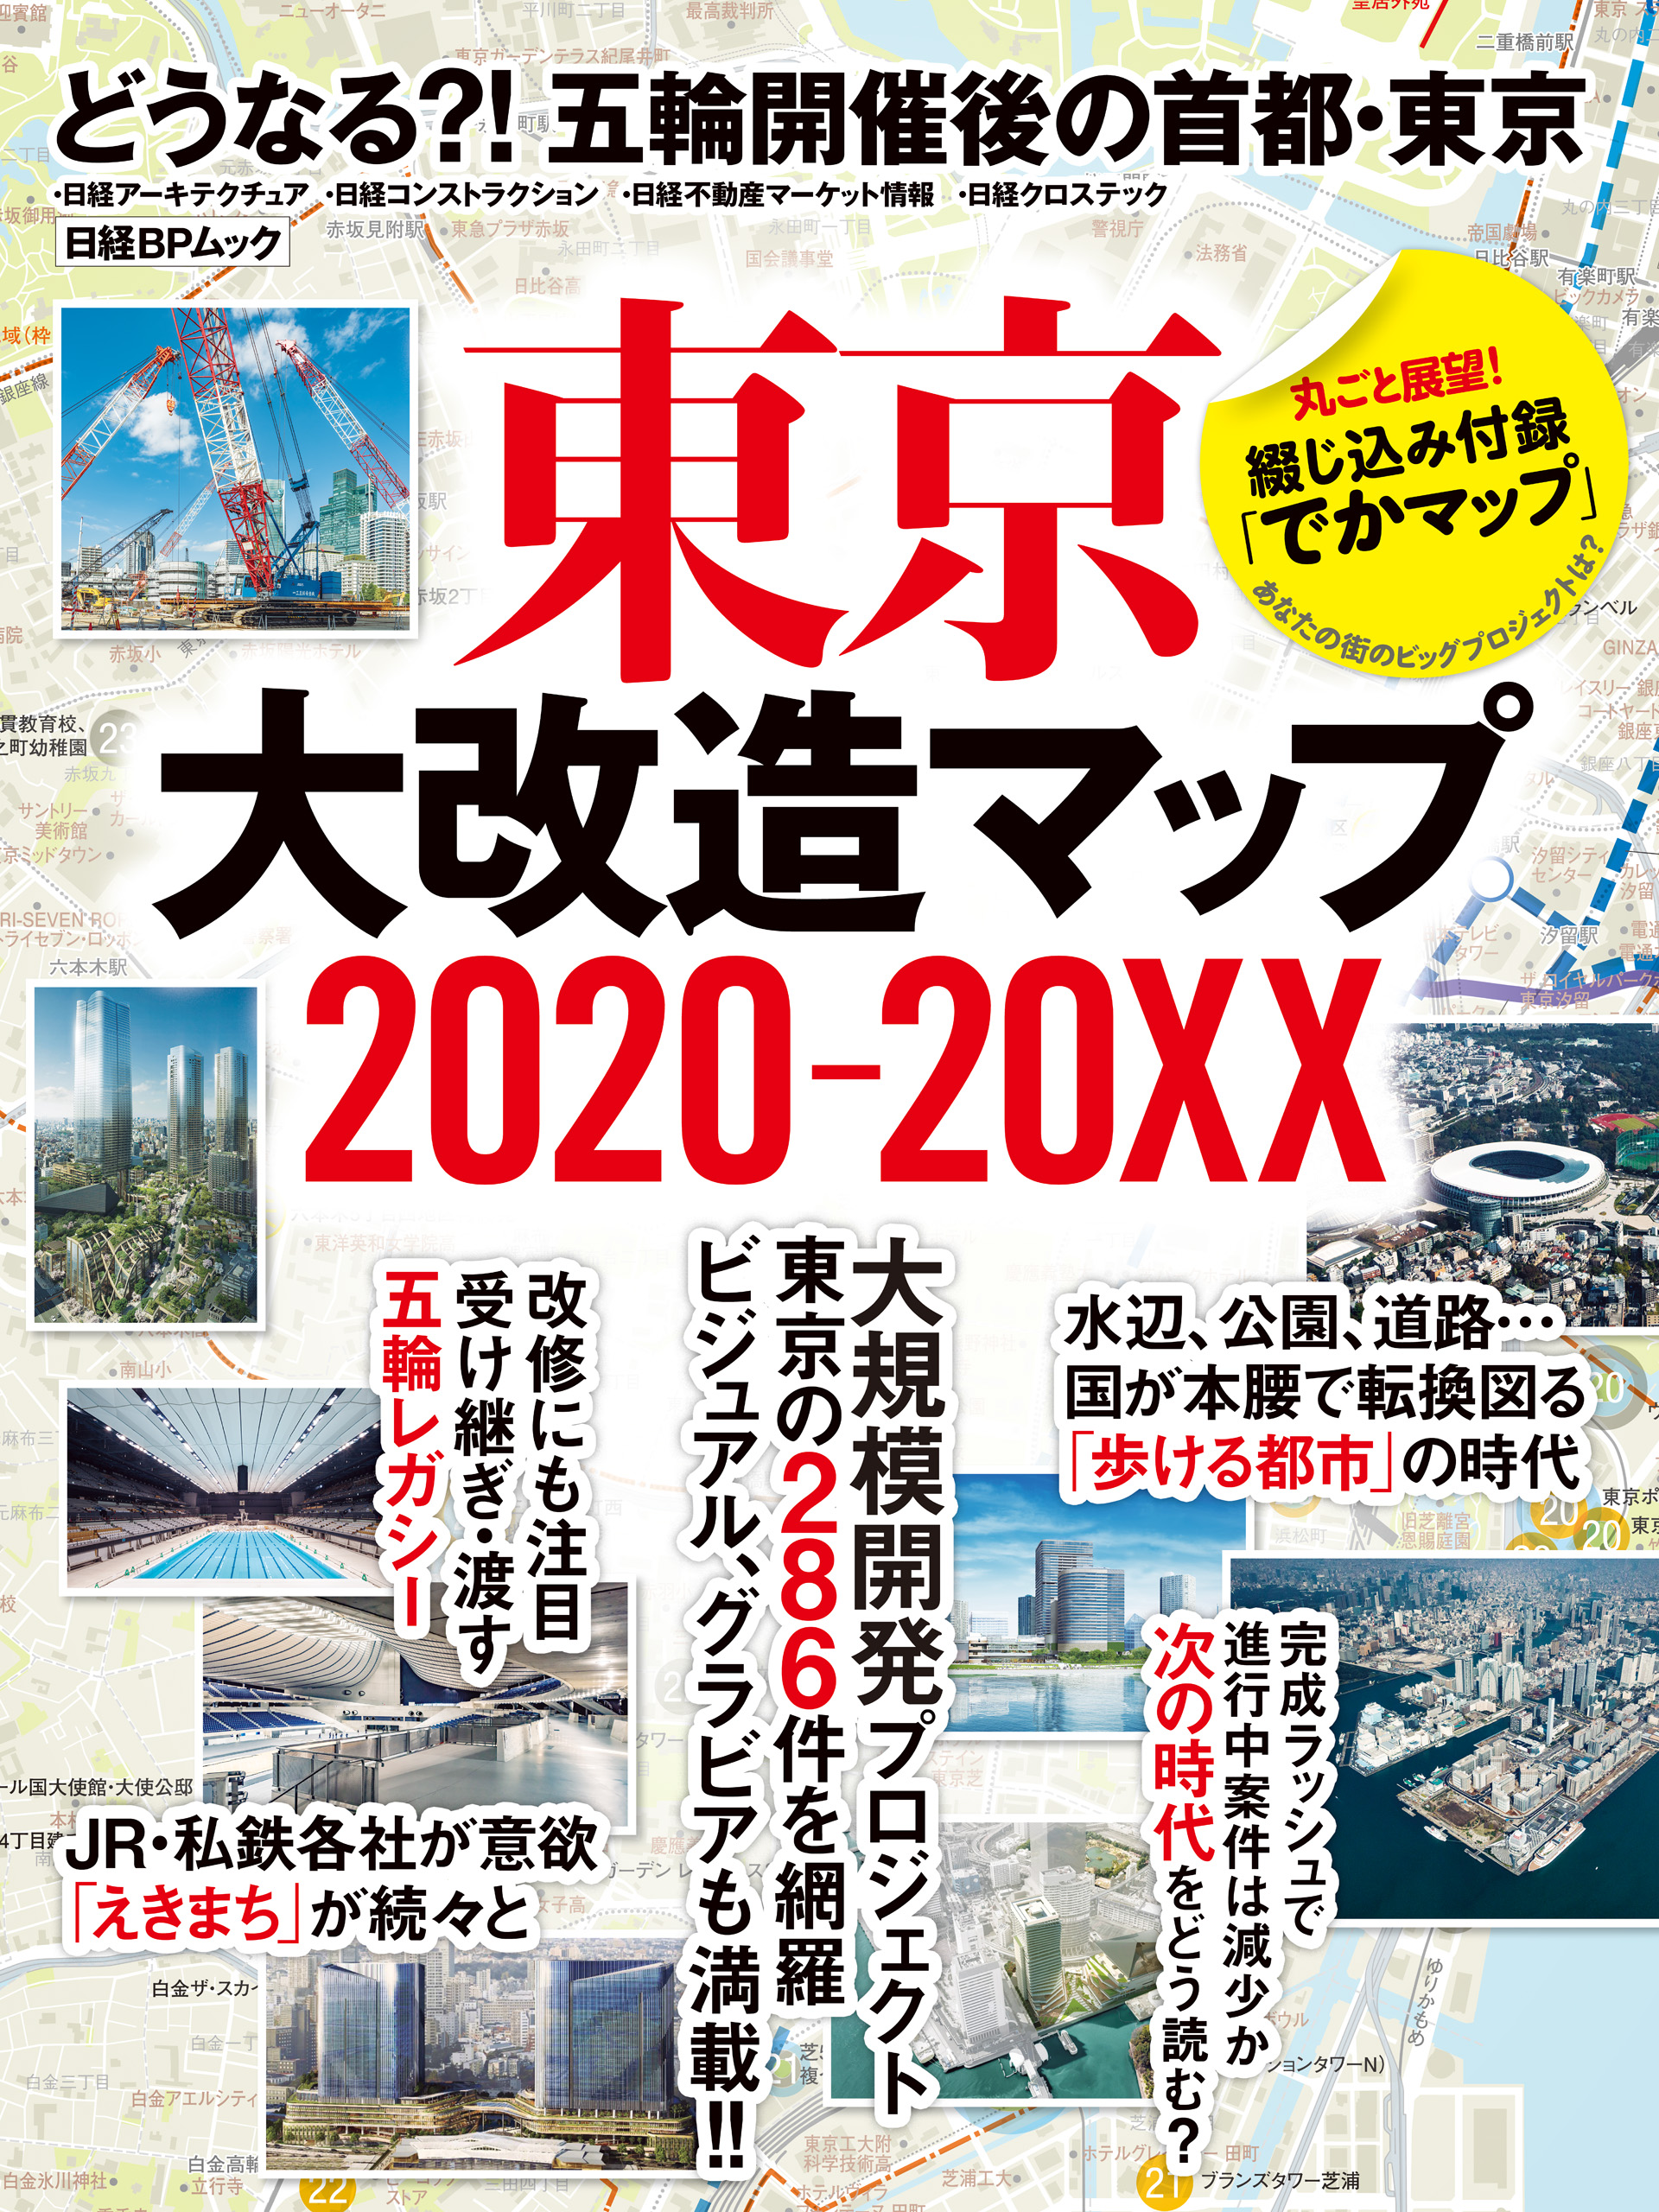 東京大改造マップ2020-20XX(書籍) - 電子書籍 | U-NEXT 初回600円分無料